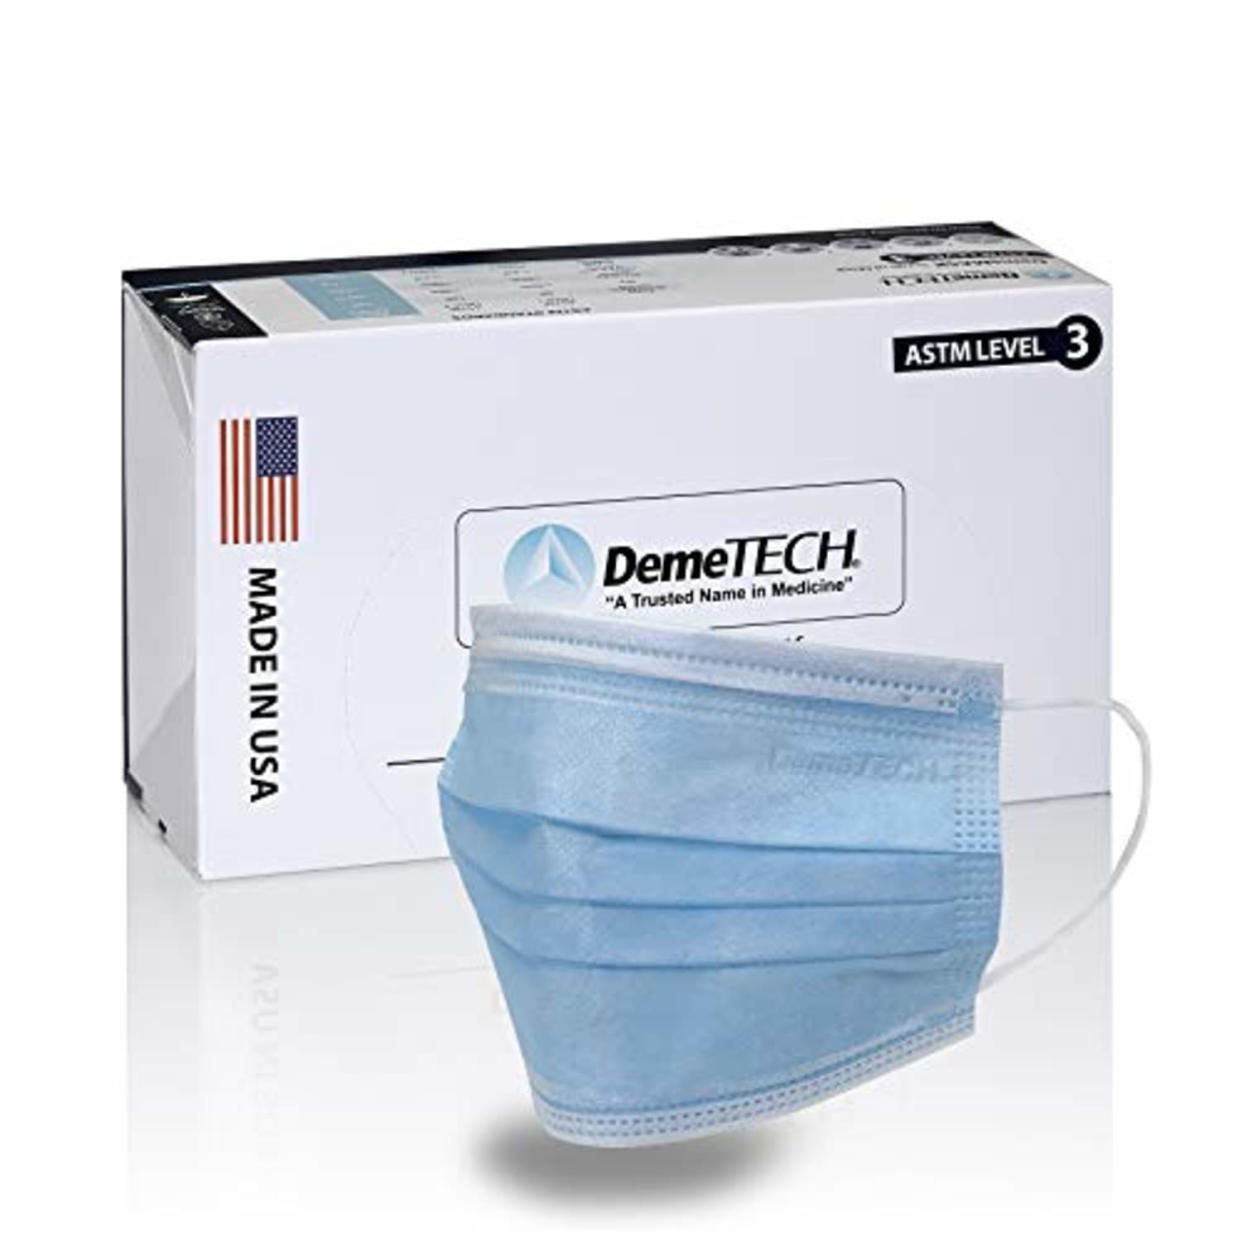 DemeTECH ASTM Level 3 Face Masks (Amazon / Amazon)